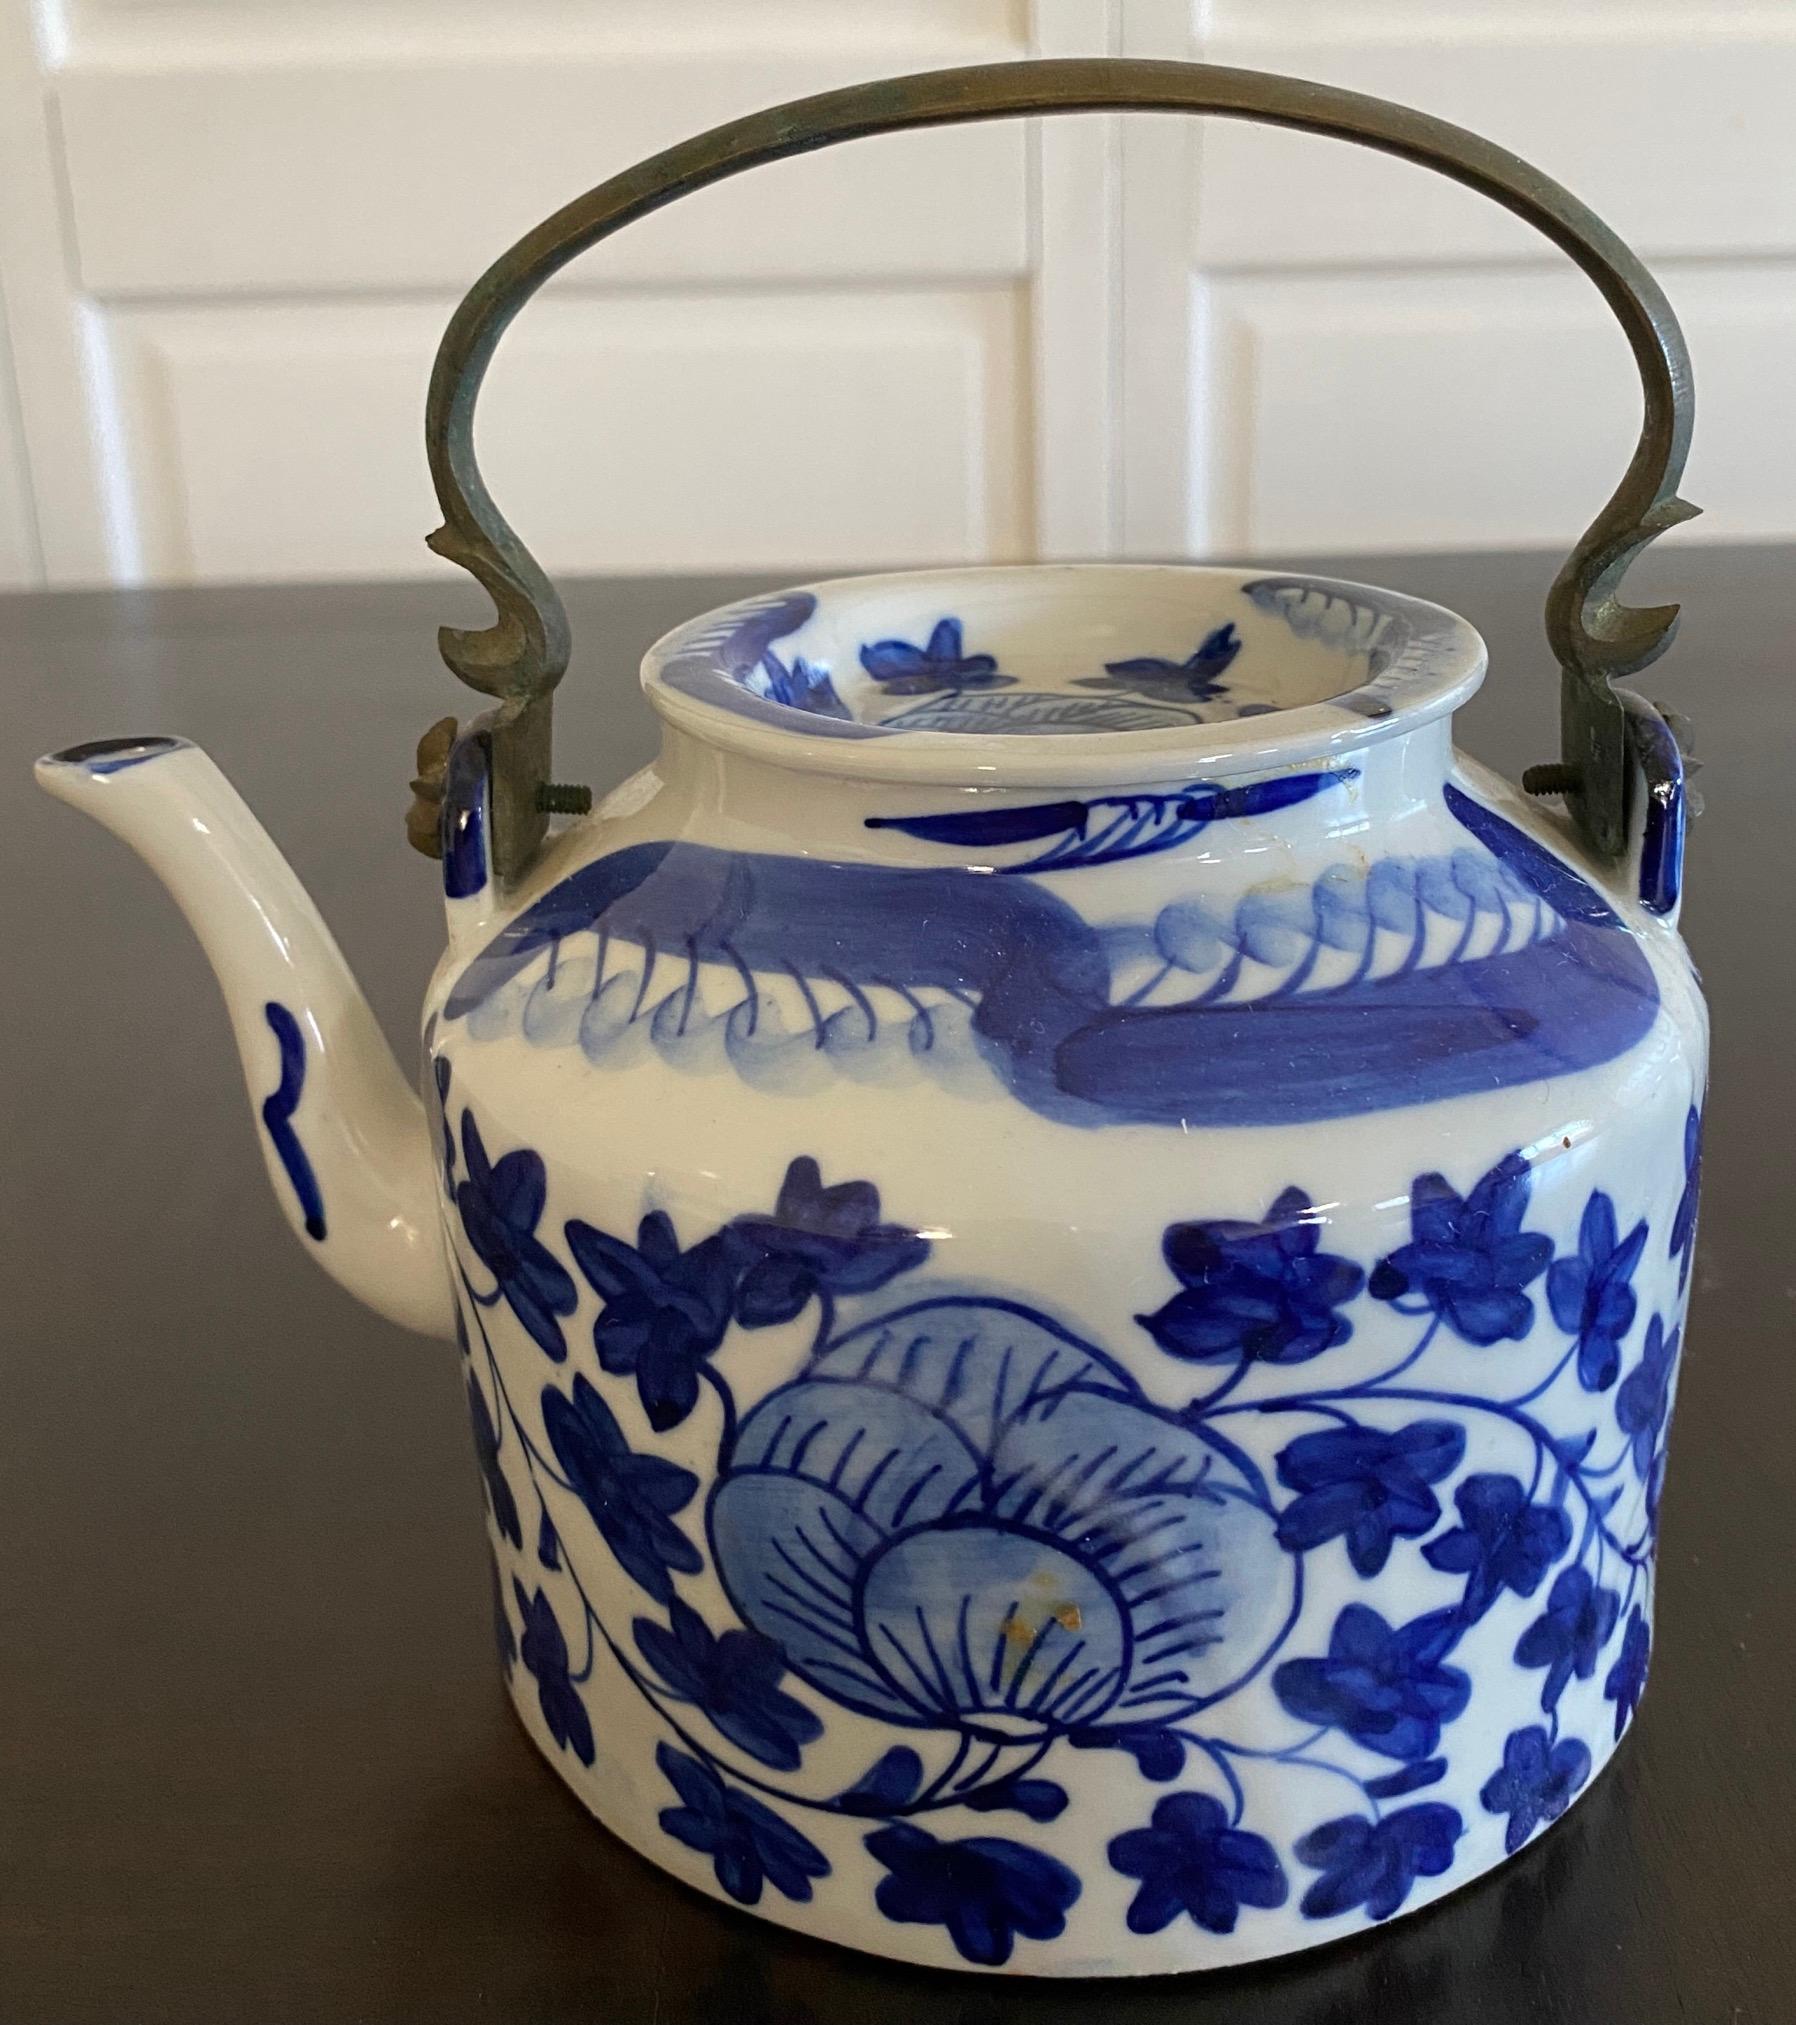 Sammlung von 3 chinesischen Export Porzellan blau & weiß Teekannen. Gönnen Sie sich eine Tasse Tee oder bedienen Sie einen Gast mit einer individuellen Teekanne oder verwenden Sie sie als Dekoration oder skulpturales Objekt
Die größte Teekanne